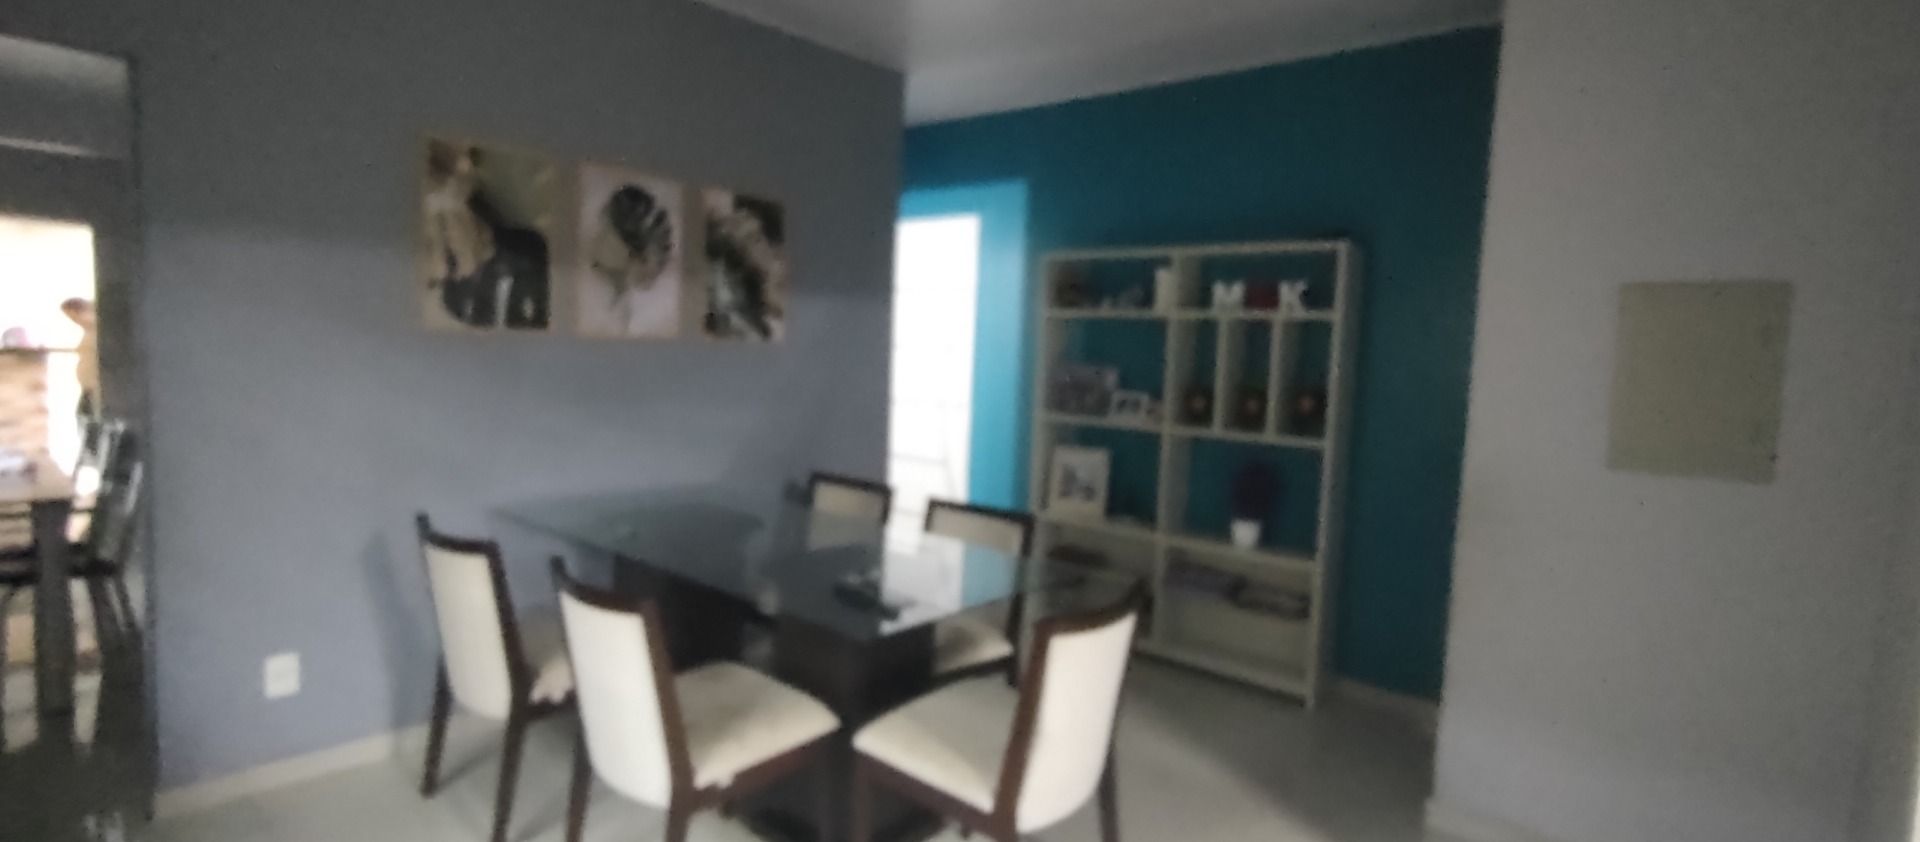 Casa com 3 dormitórios à venda, 275 m² por RS 380.000,00 - Cidade Nova - Manaus-AM